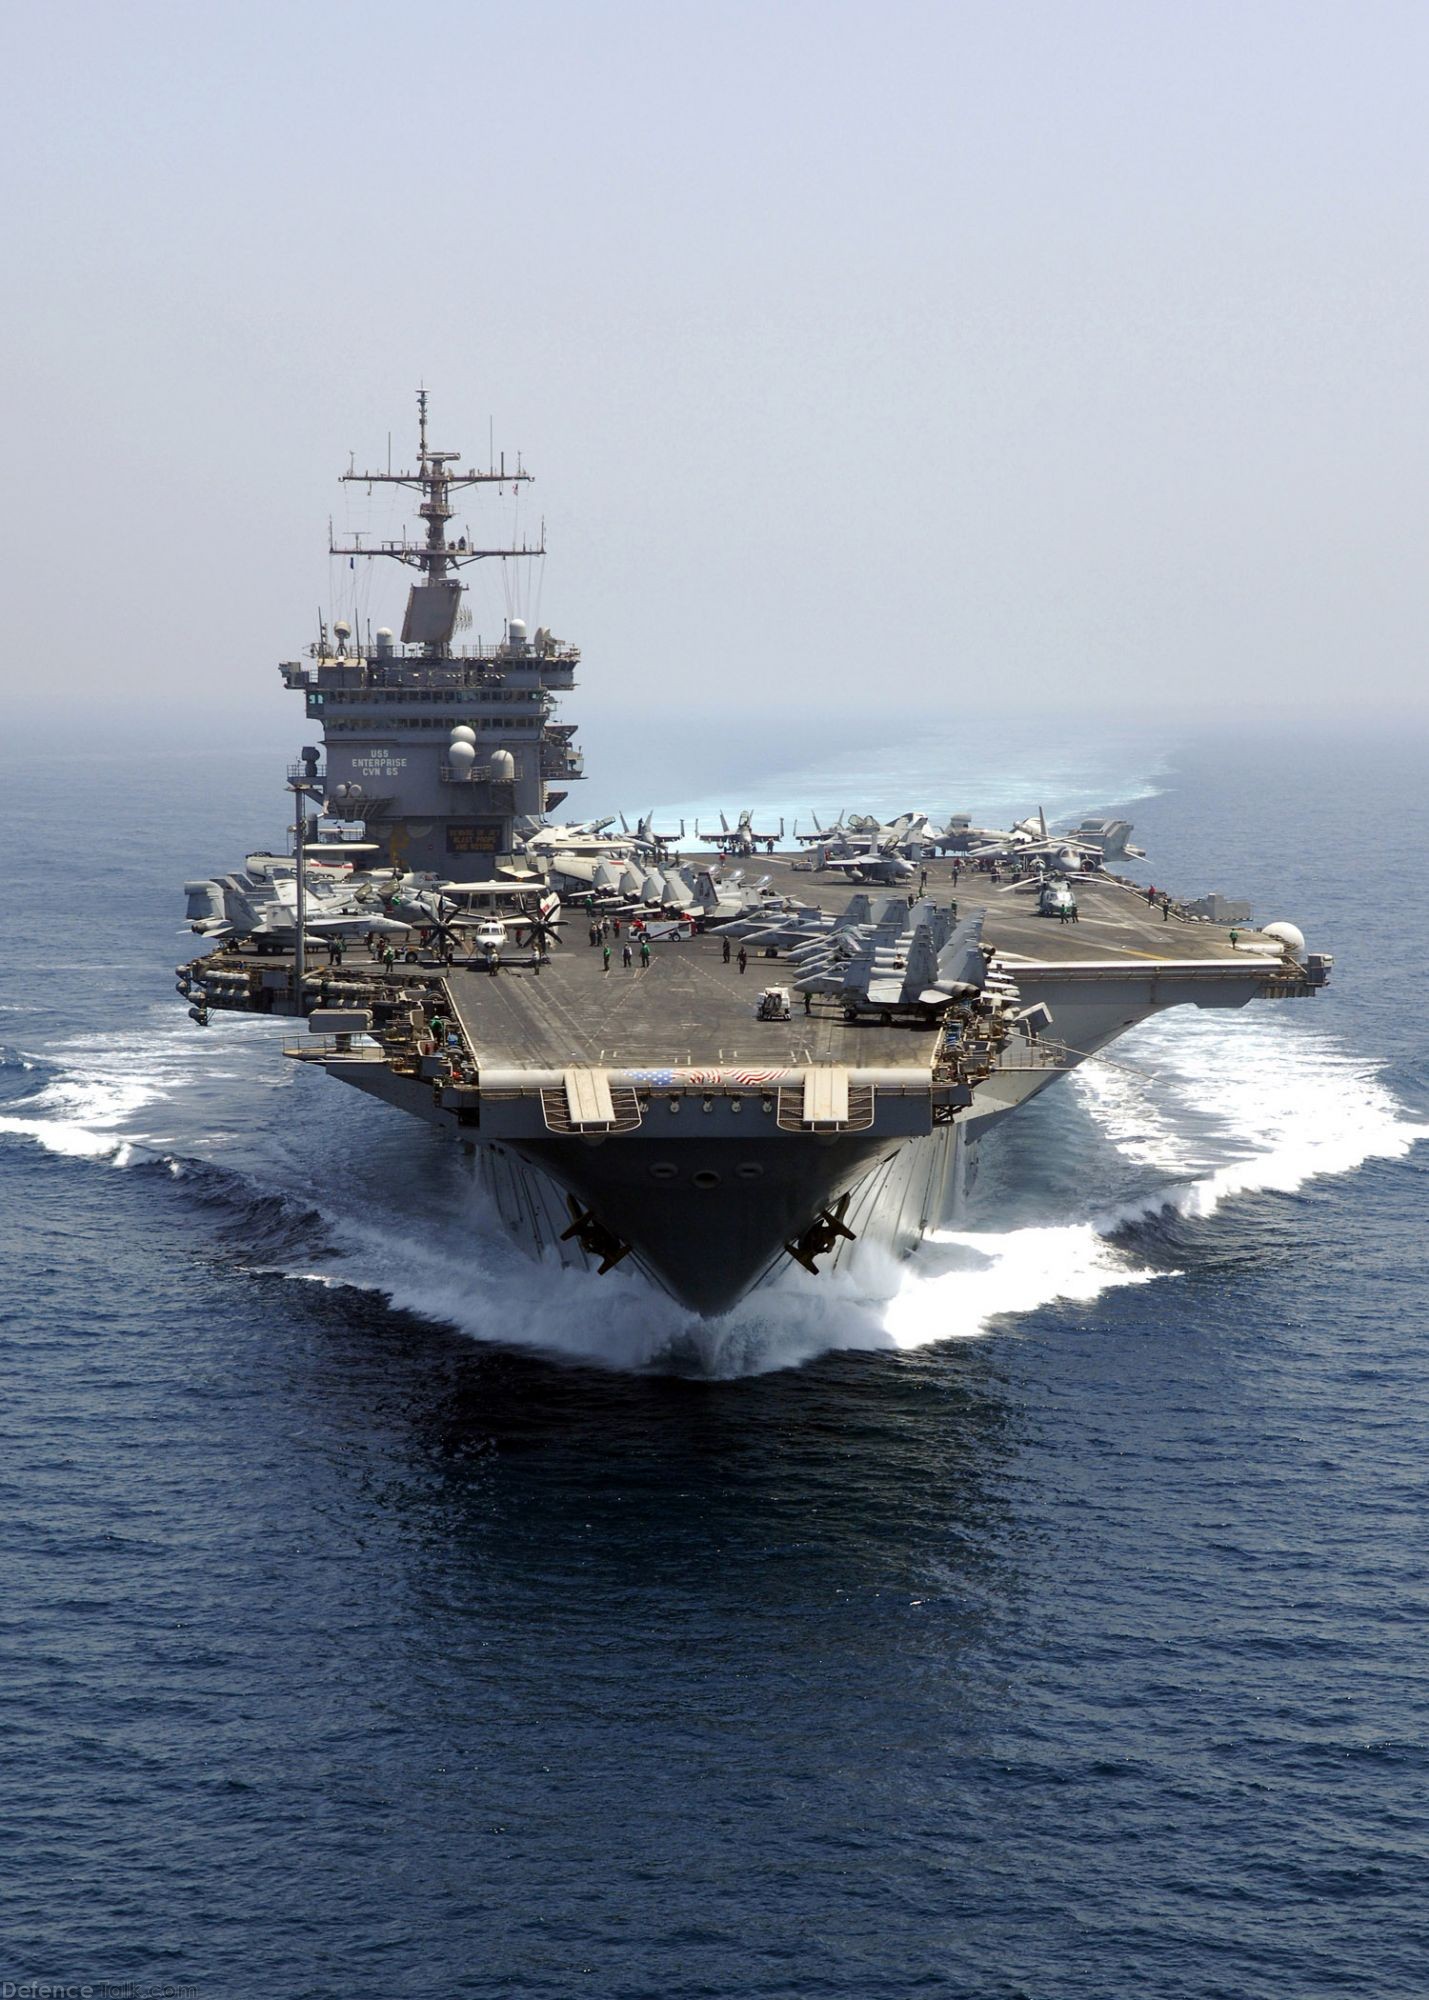 Nuclear-powered aircraft carrier USS Enterprise